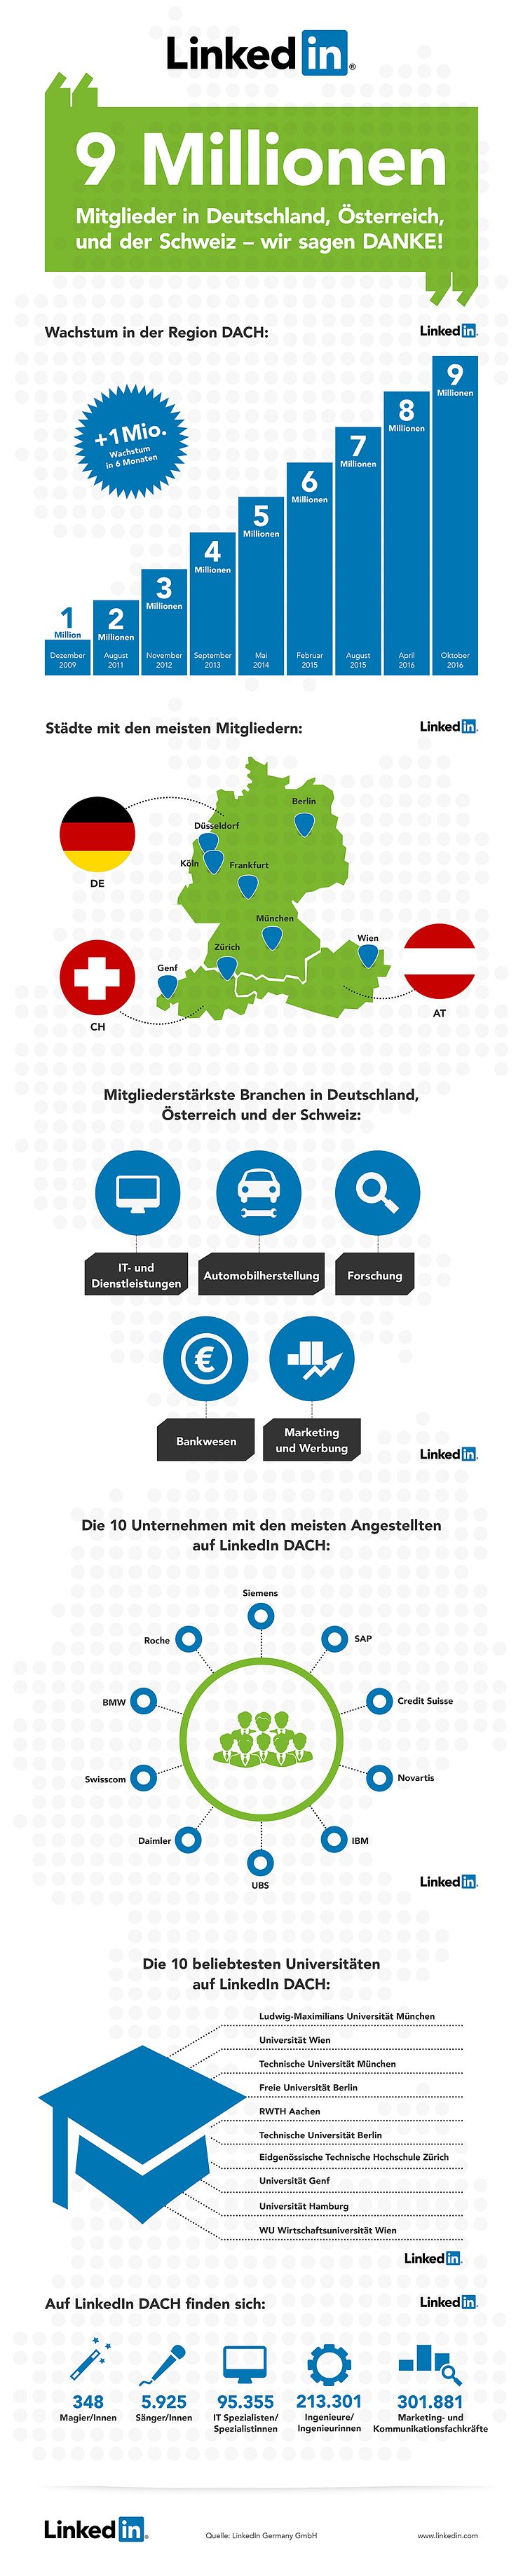 LinkedIn Infografik 9 Millionen Mitglieder in Deutschland, Österreich, Schweiz